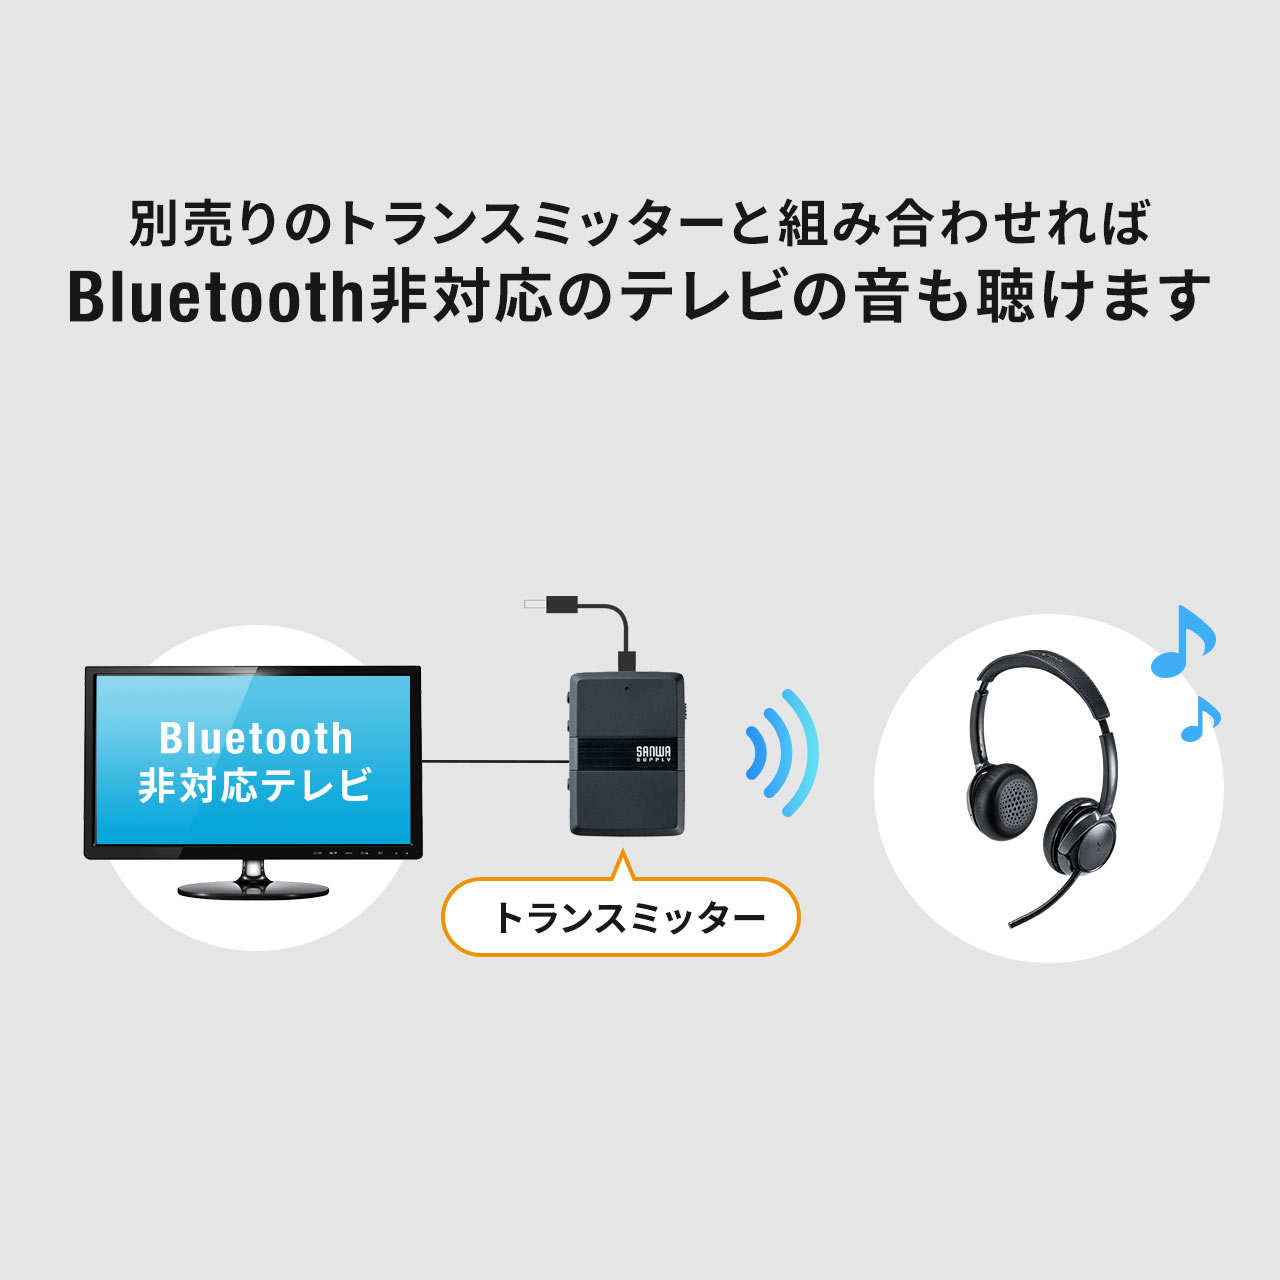 Bluetoothヘッドセット ワイヤレスヘッドセット 無線 両耳タイプ オーバーヘッド 全指向性 在宅勤務 コールセンタークレードルつき コーデック USB 400-BTSH018BK